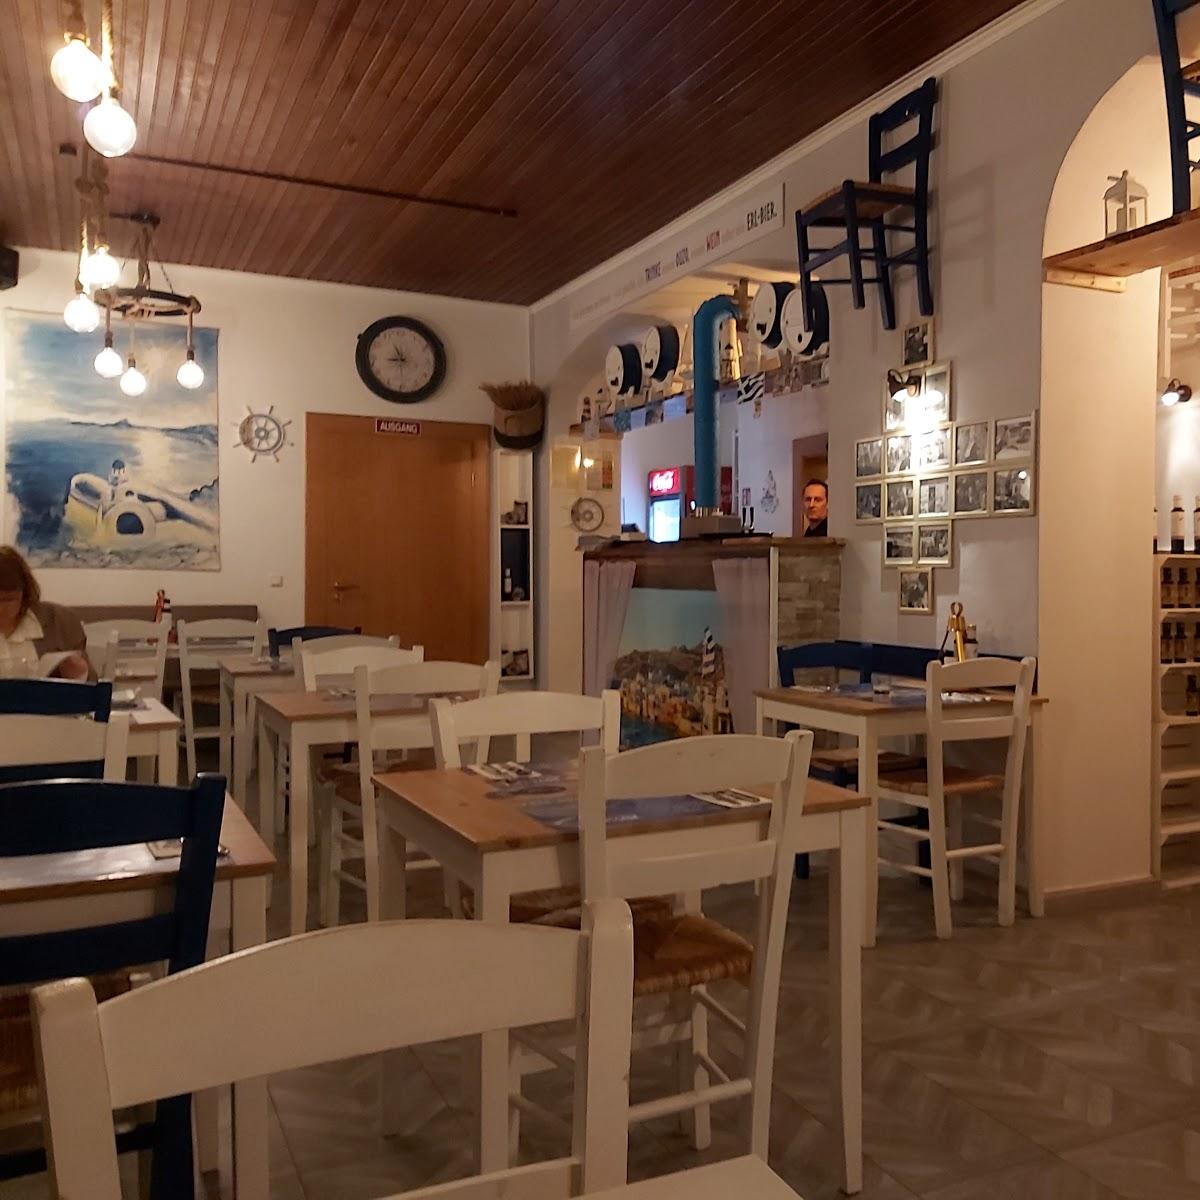 Restaurant "Griechische Taverne Yiassas" in  Straubing